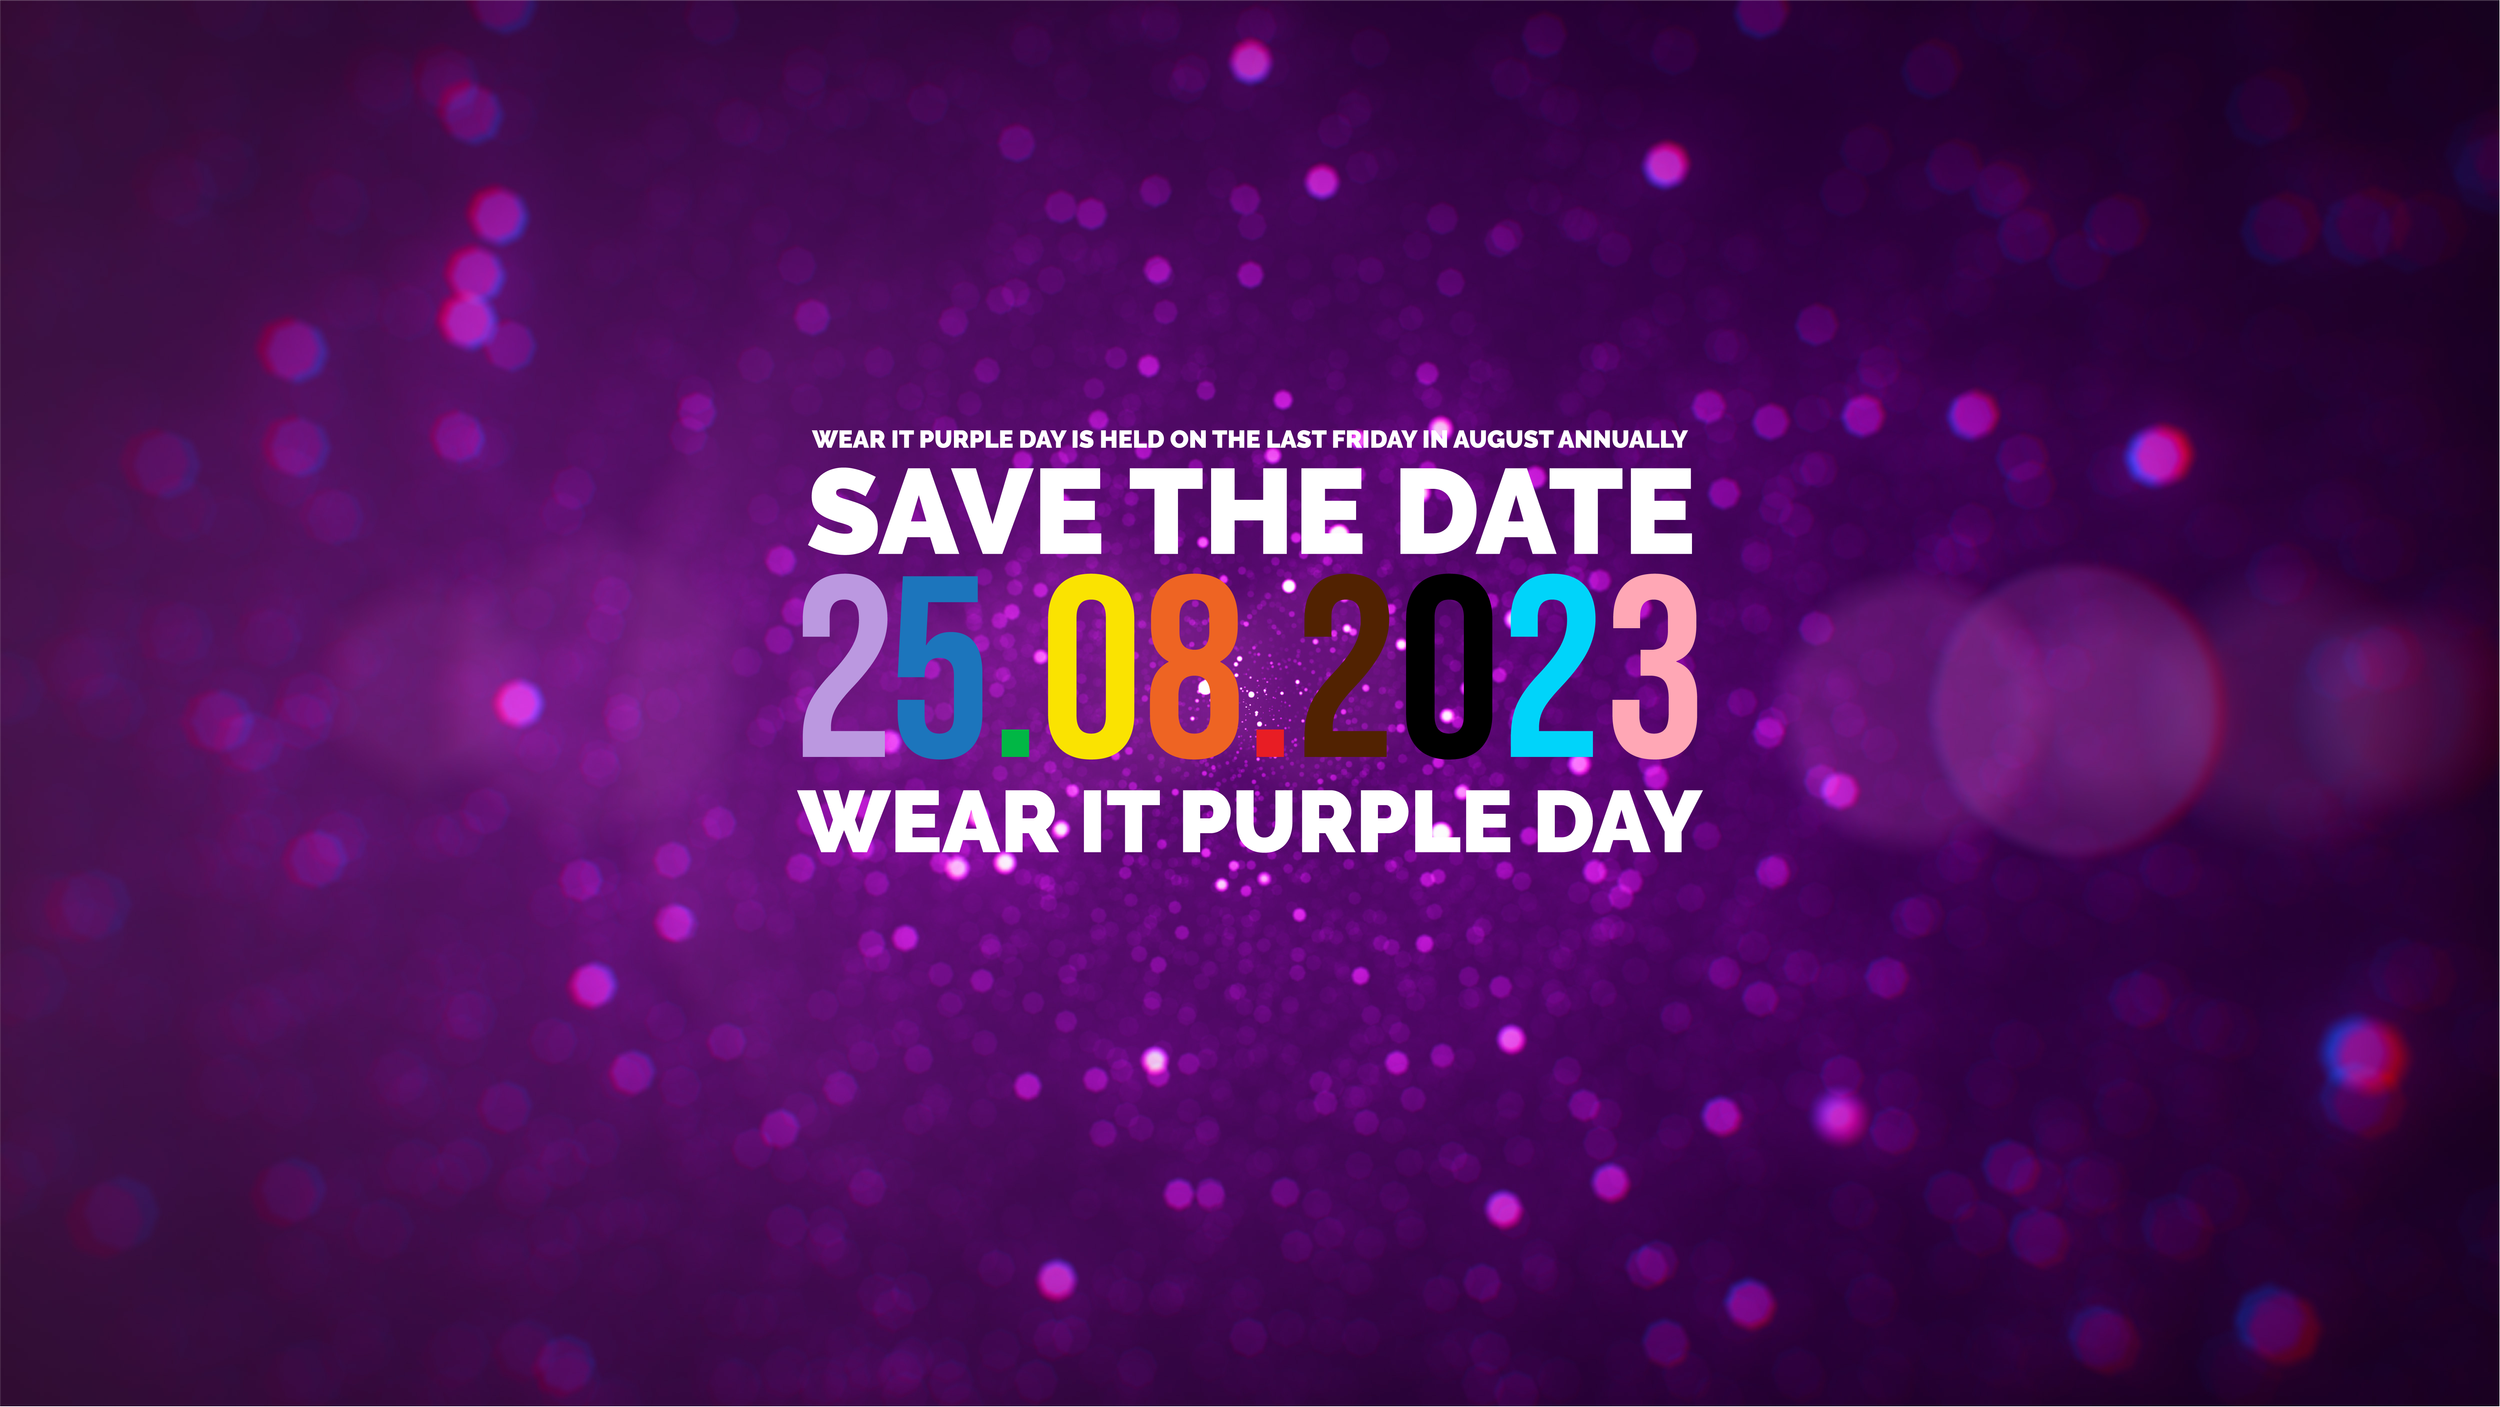 Hãy mặc đồ màu tím trên ngày Wear it Purple để cùng nhau thể hiện sự kính trọng và ủng hộ cho cộng đồng Đồng giới và LGBT. Tham gia xem hình ảnh liên quan tới Wear it Purple để cùng nhau ủng hộ mong muốn đem lại bình đẳng và sự hiểu biết cho tất cả mọi người. Translation: Wear purple clothes on Wear it Purple Day to show respect and support for the LGBTQ+ community. Join us to watch the related images of Wear it Purple and support the desire for equality and understanding for everyone.